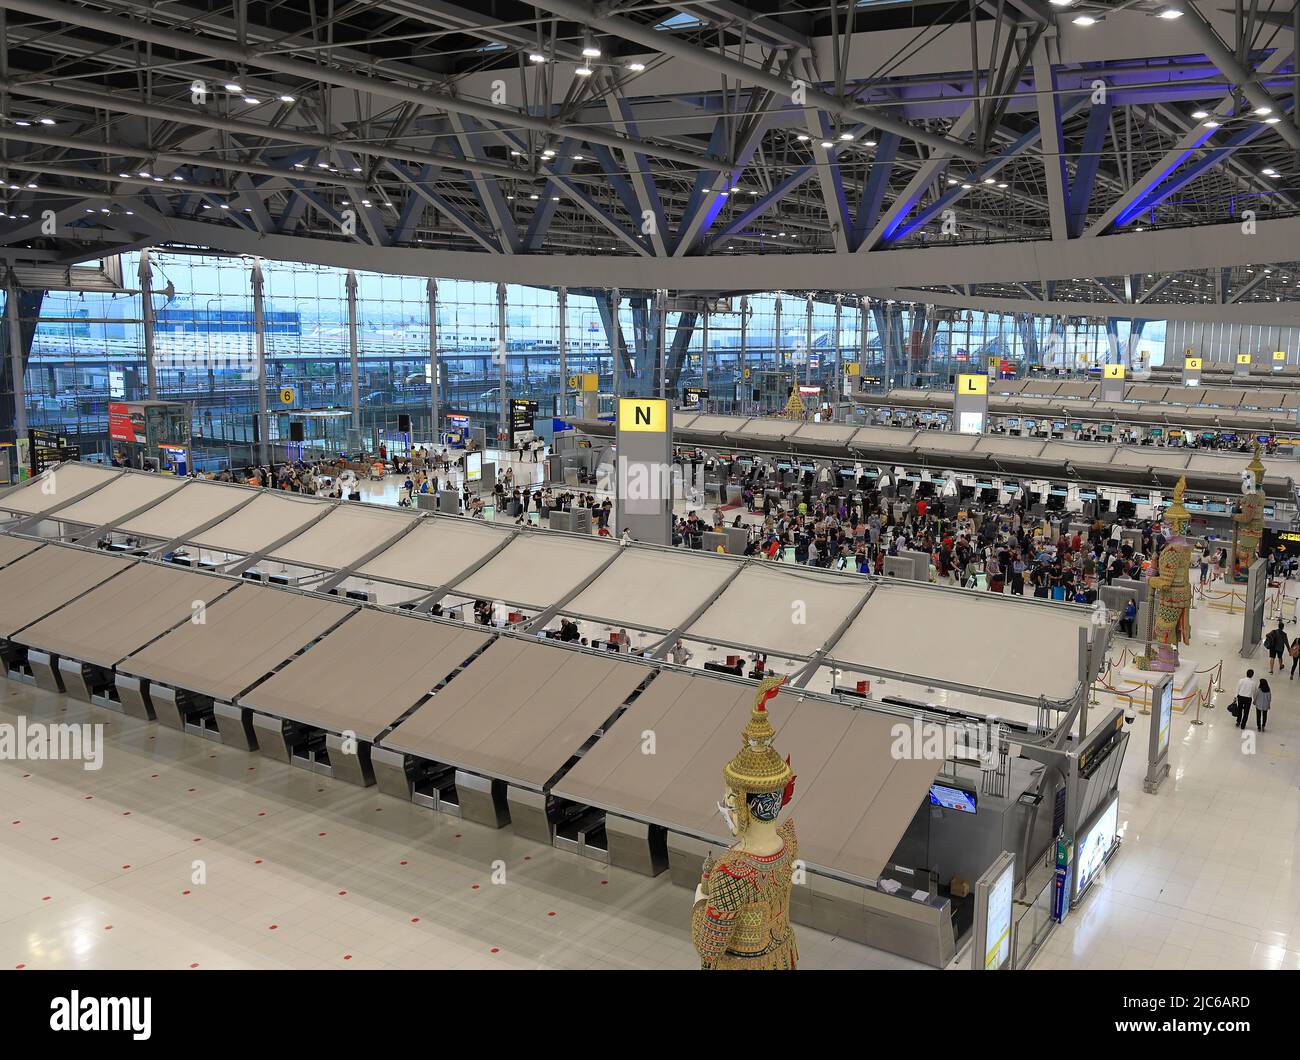 Certains comptoirs d'enregistrement sont vides dans le hall des départs du terminal 1 de l'aéroport international de Suvarnabhumi en raison de la situation de Covid-19. Banque D'Images